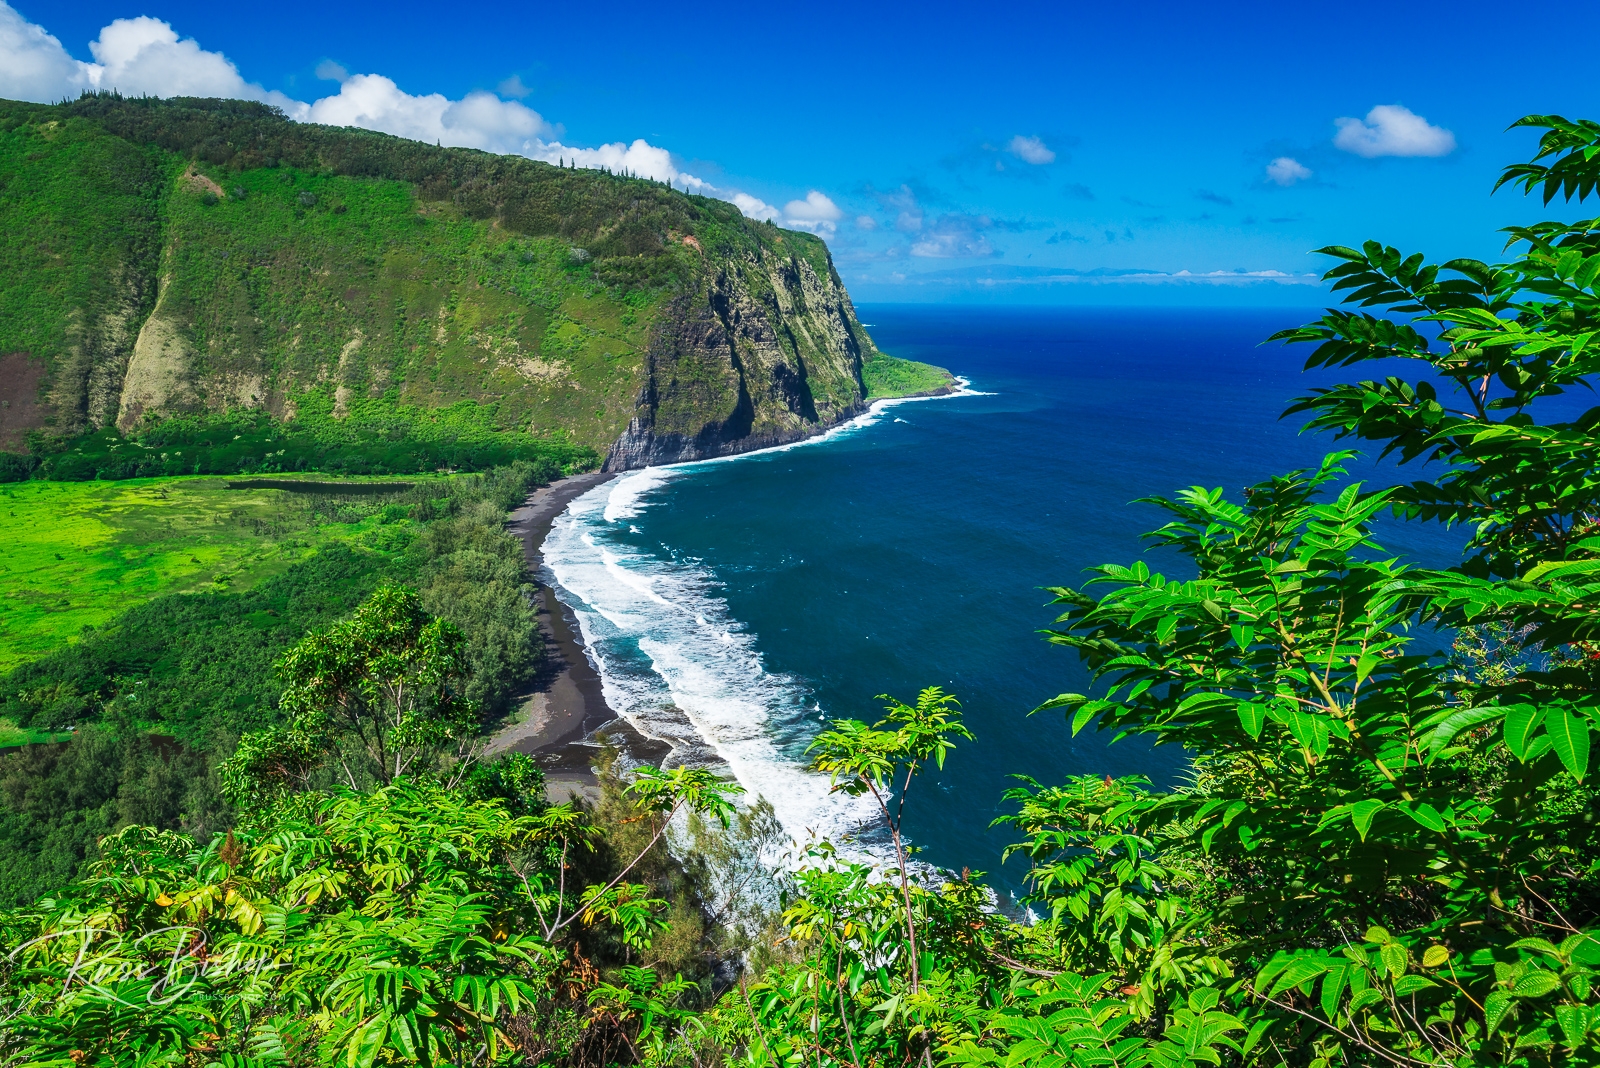 Hawaii's Valley of the Kings. Waipio Valley, Hamakua Coast, The Big Island, Hawaii